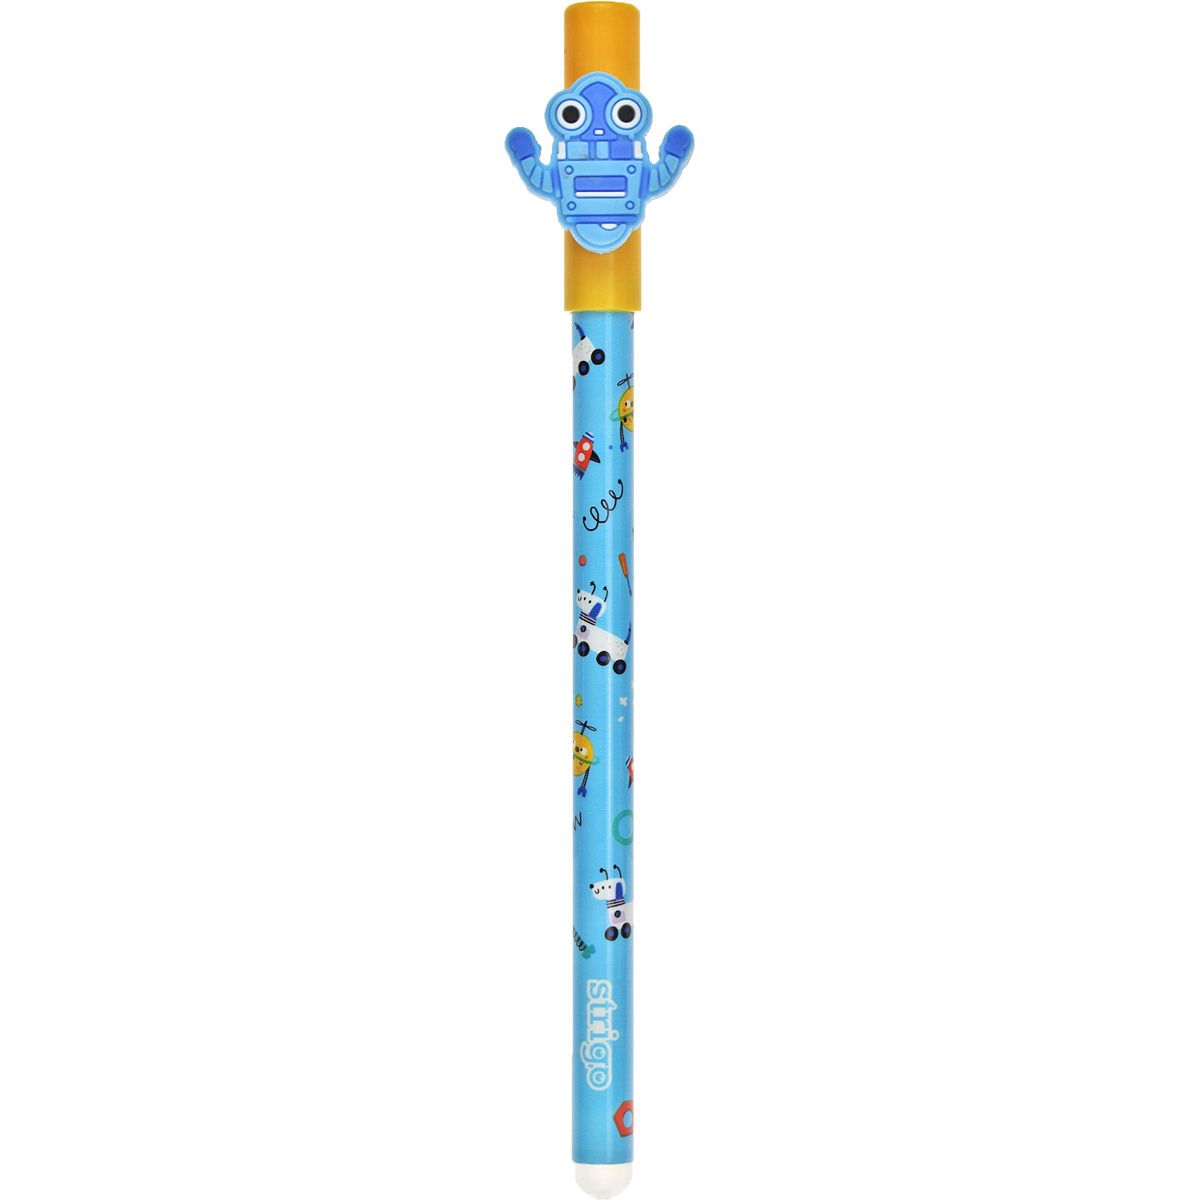 Długopis wymazywalny Strigo robot 5902315577480 niebieski 0,5mm (SSC185)